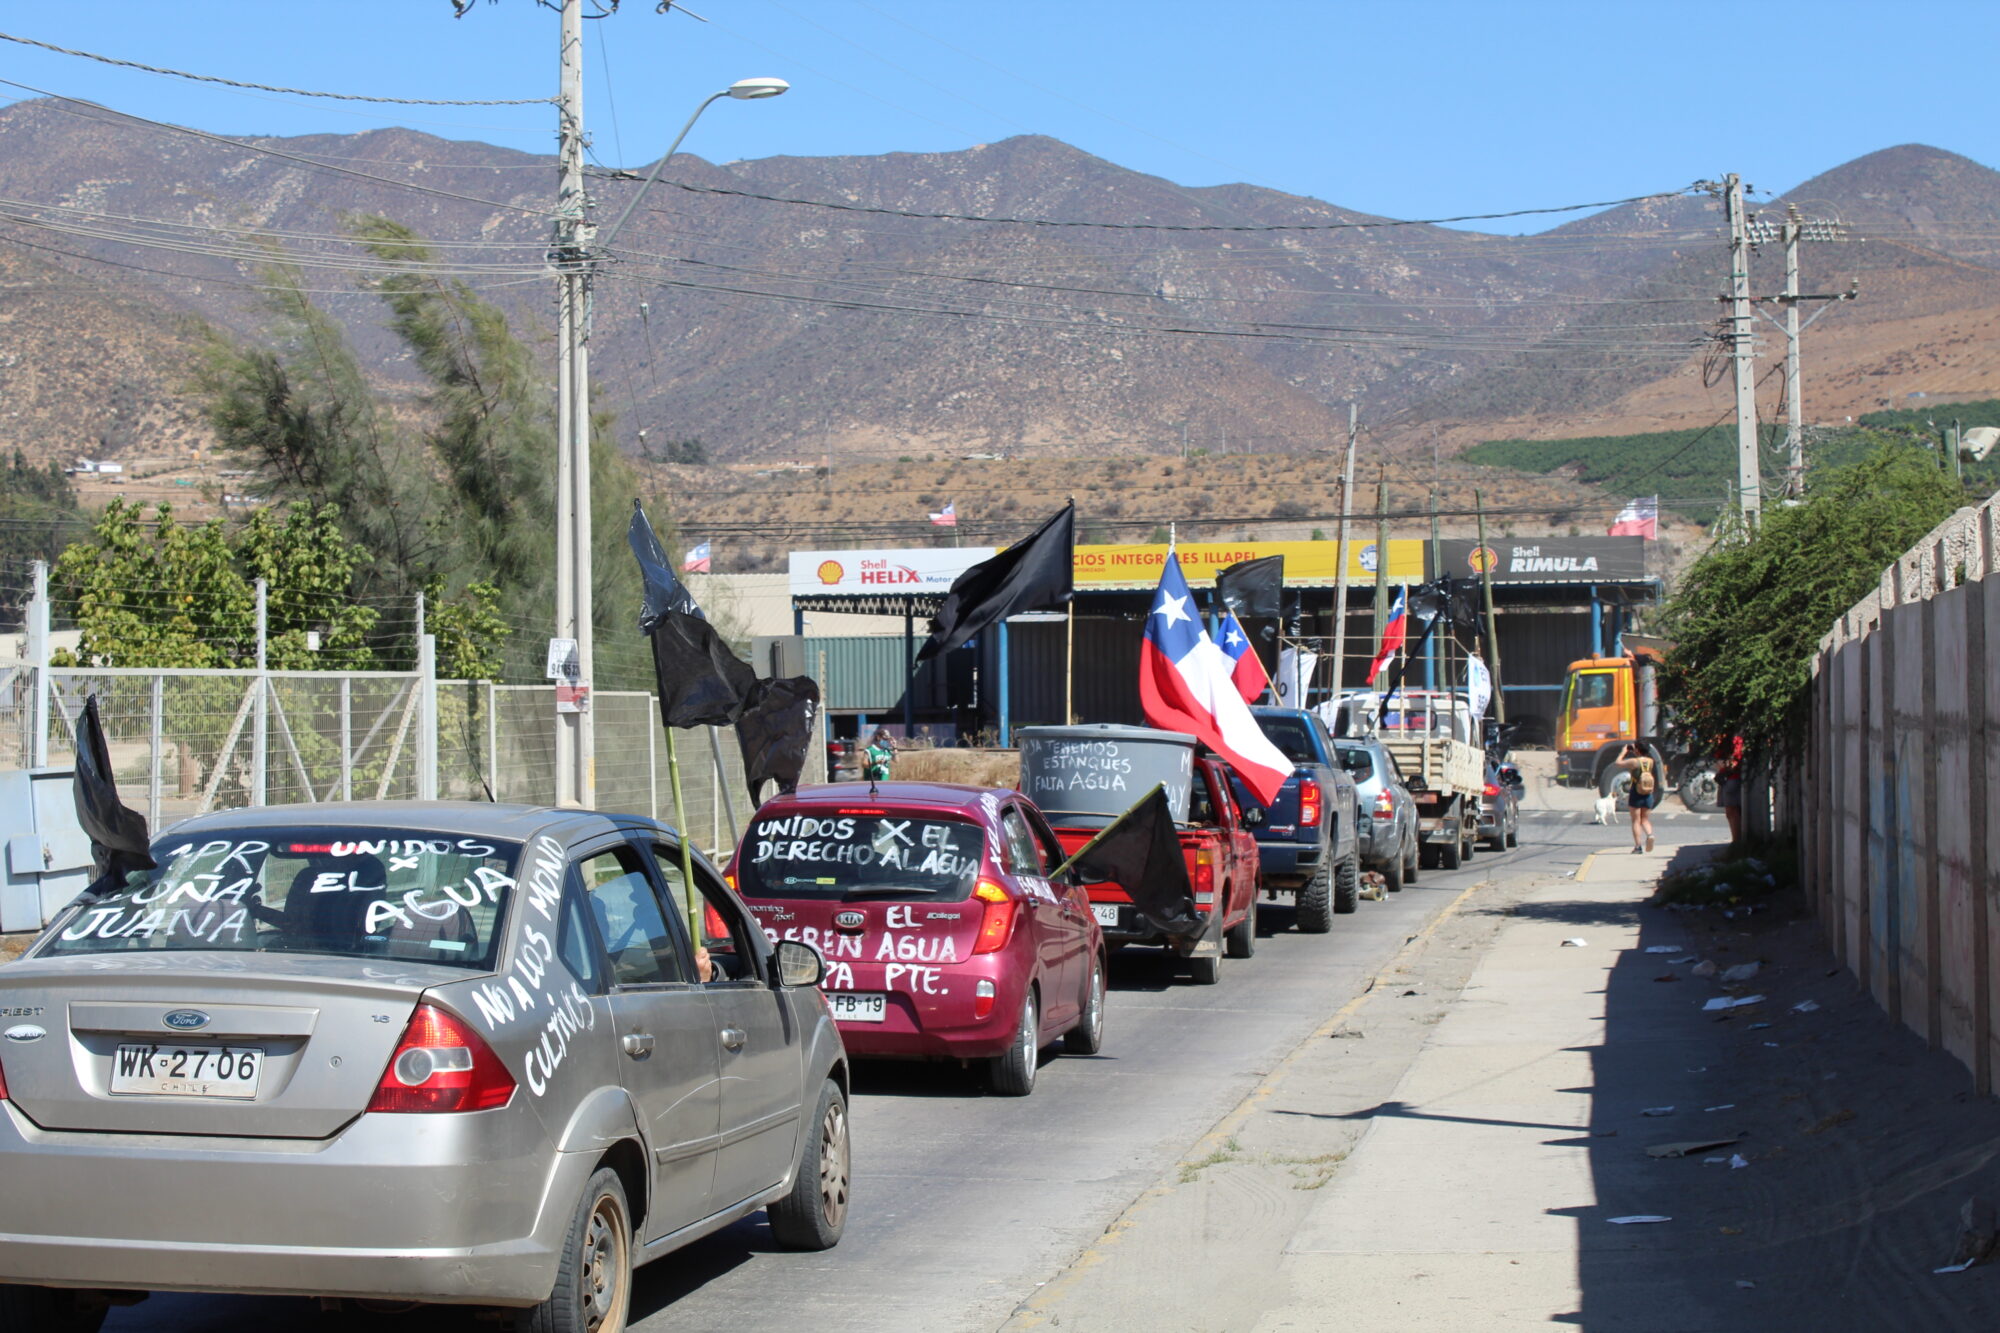 fila de autos con inscripciones en contra de la minería y banderas de chile